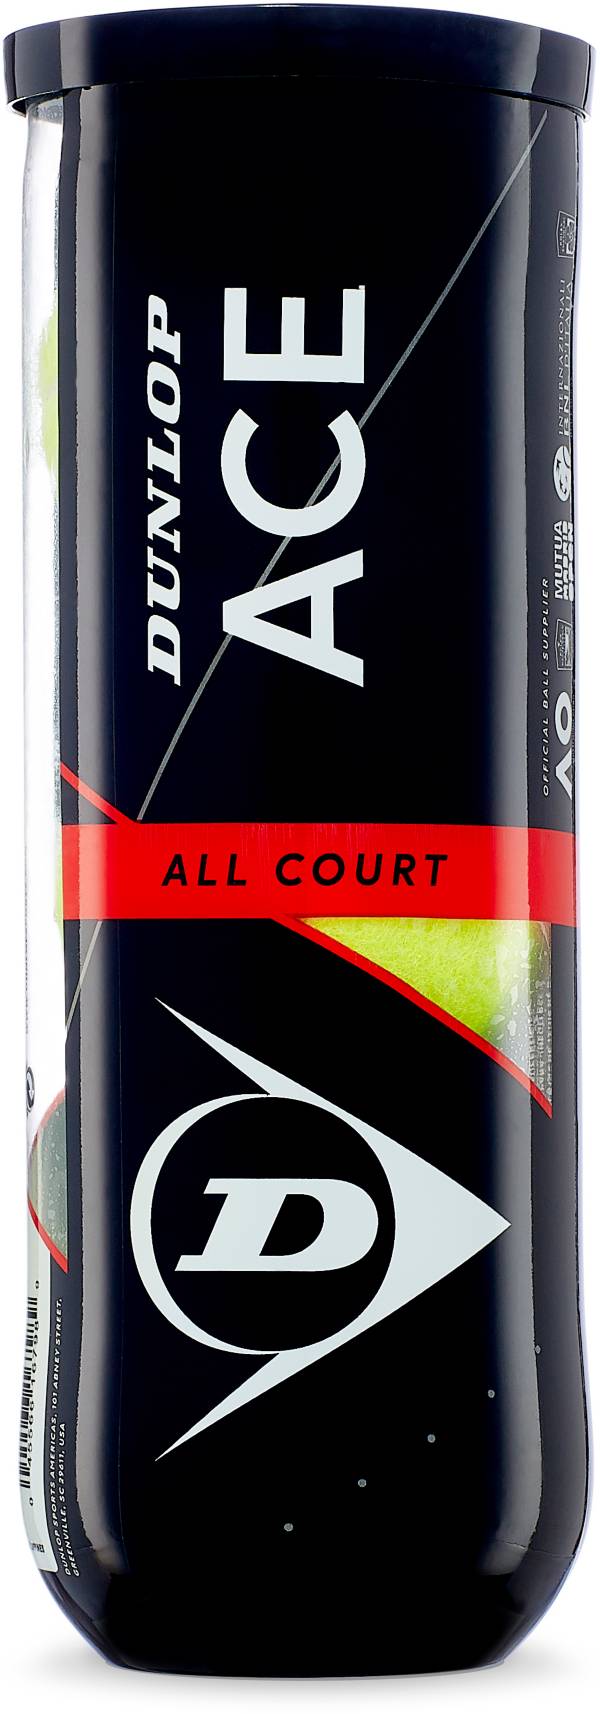 Dunlop Ace All Court 3-Ball Can